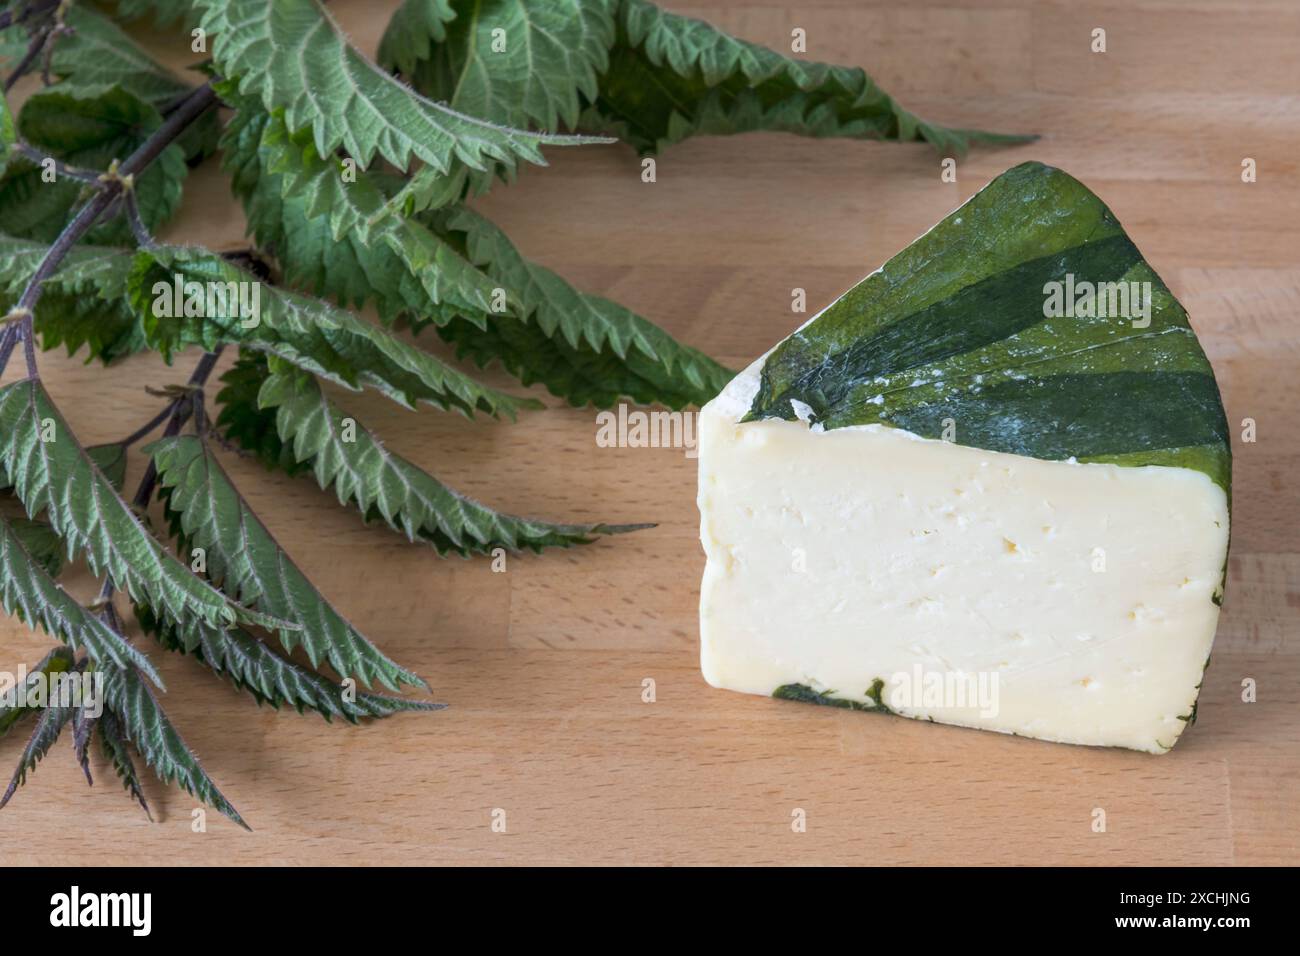 Le fromage jaune de Cornouailles est traditionnellement enveloppé dans des feuilles d'ortie. Banque D'Images